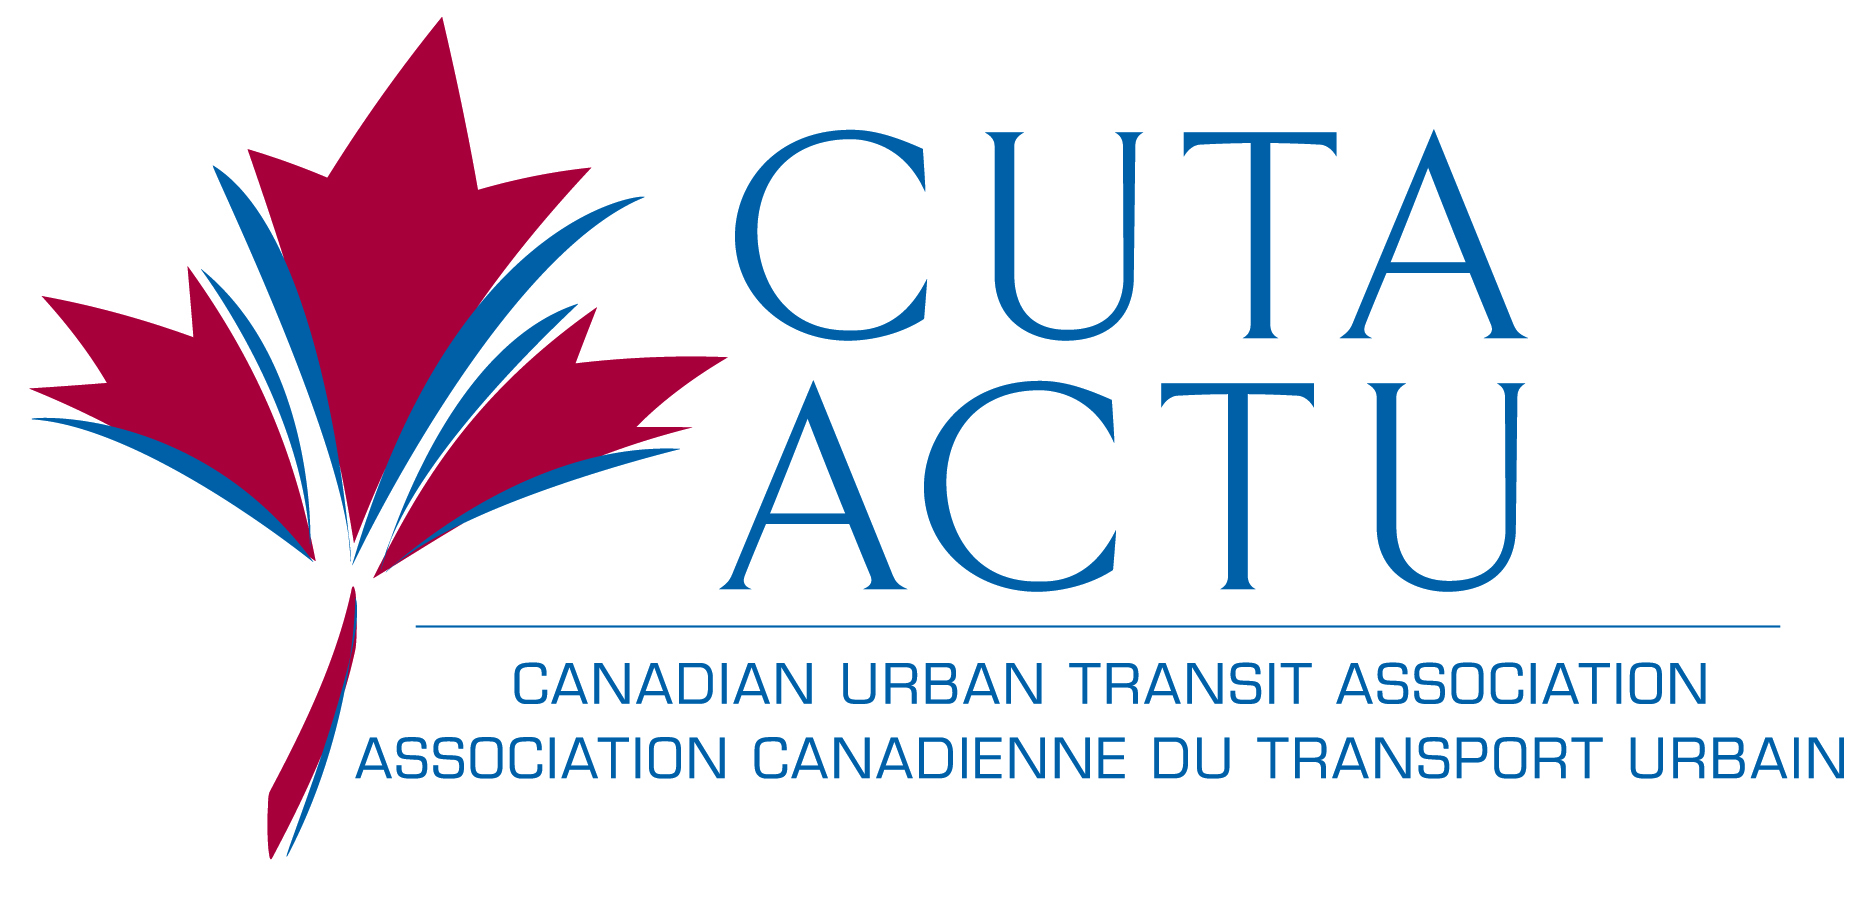 Organization logo of Canadian Urban Transit Association (CUTA)